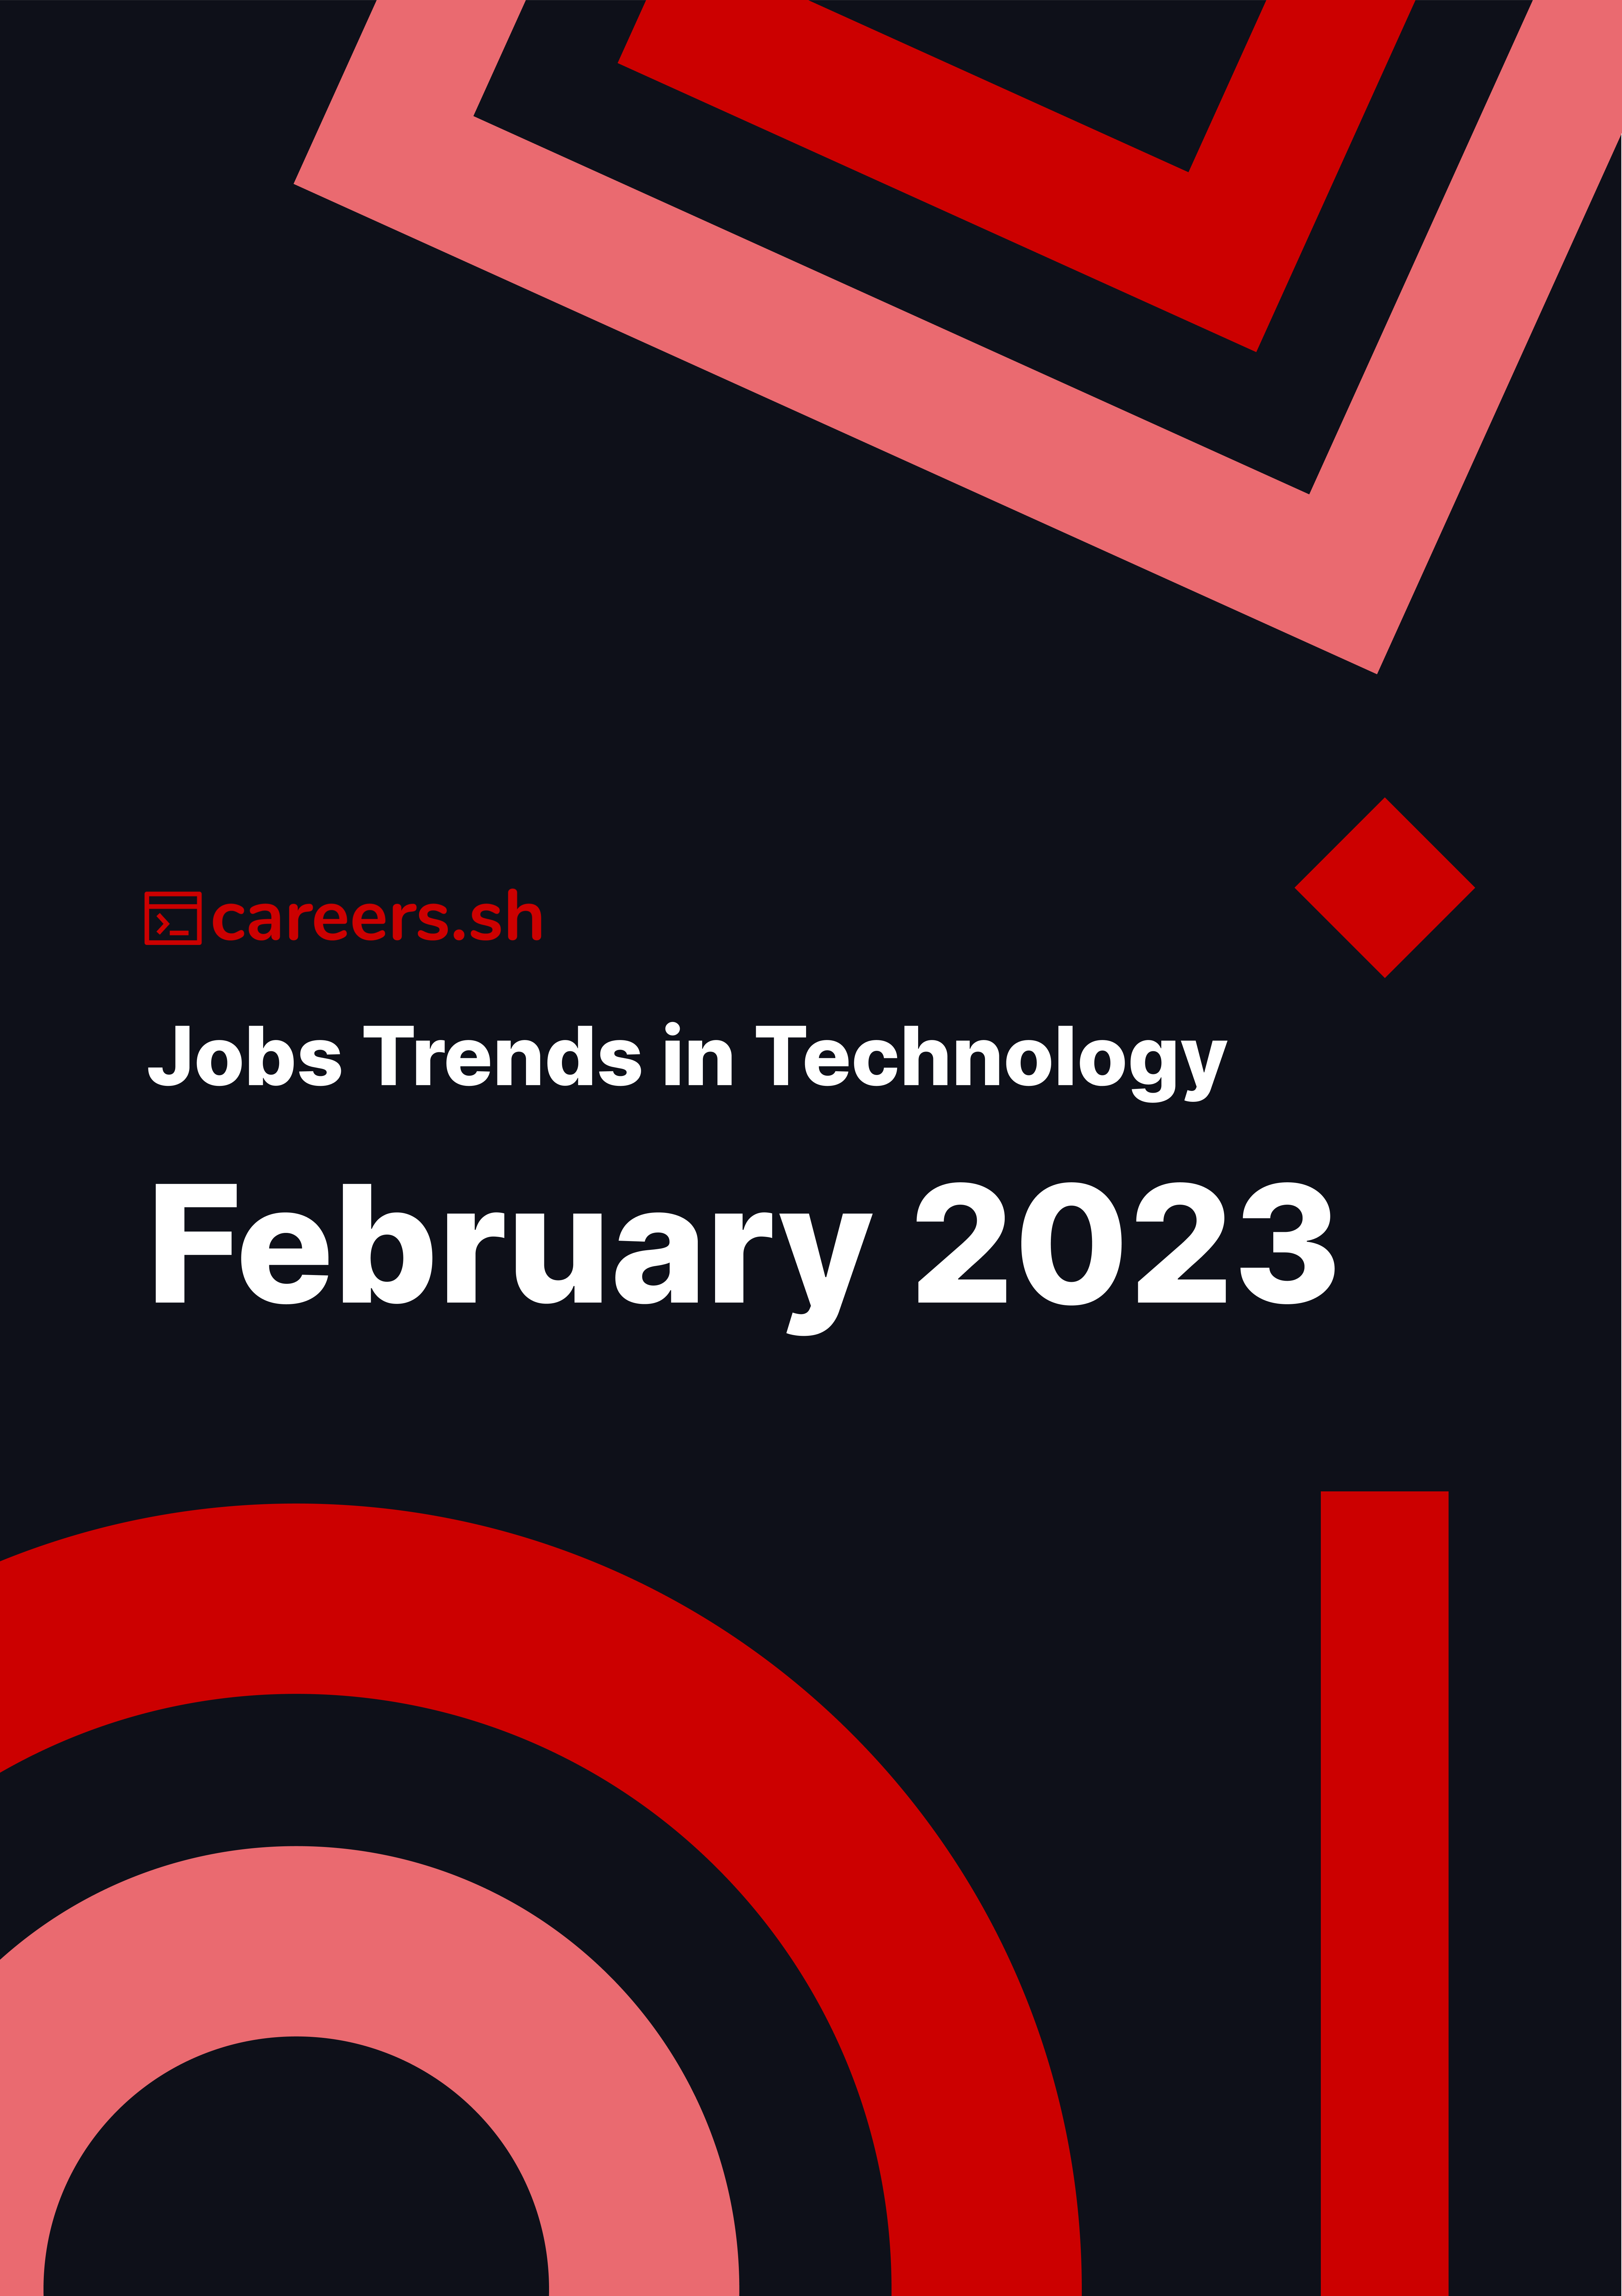 Careers.sh - February 2023